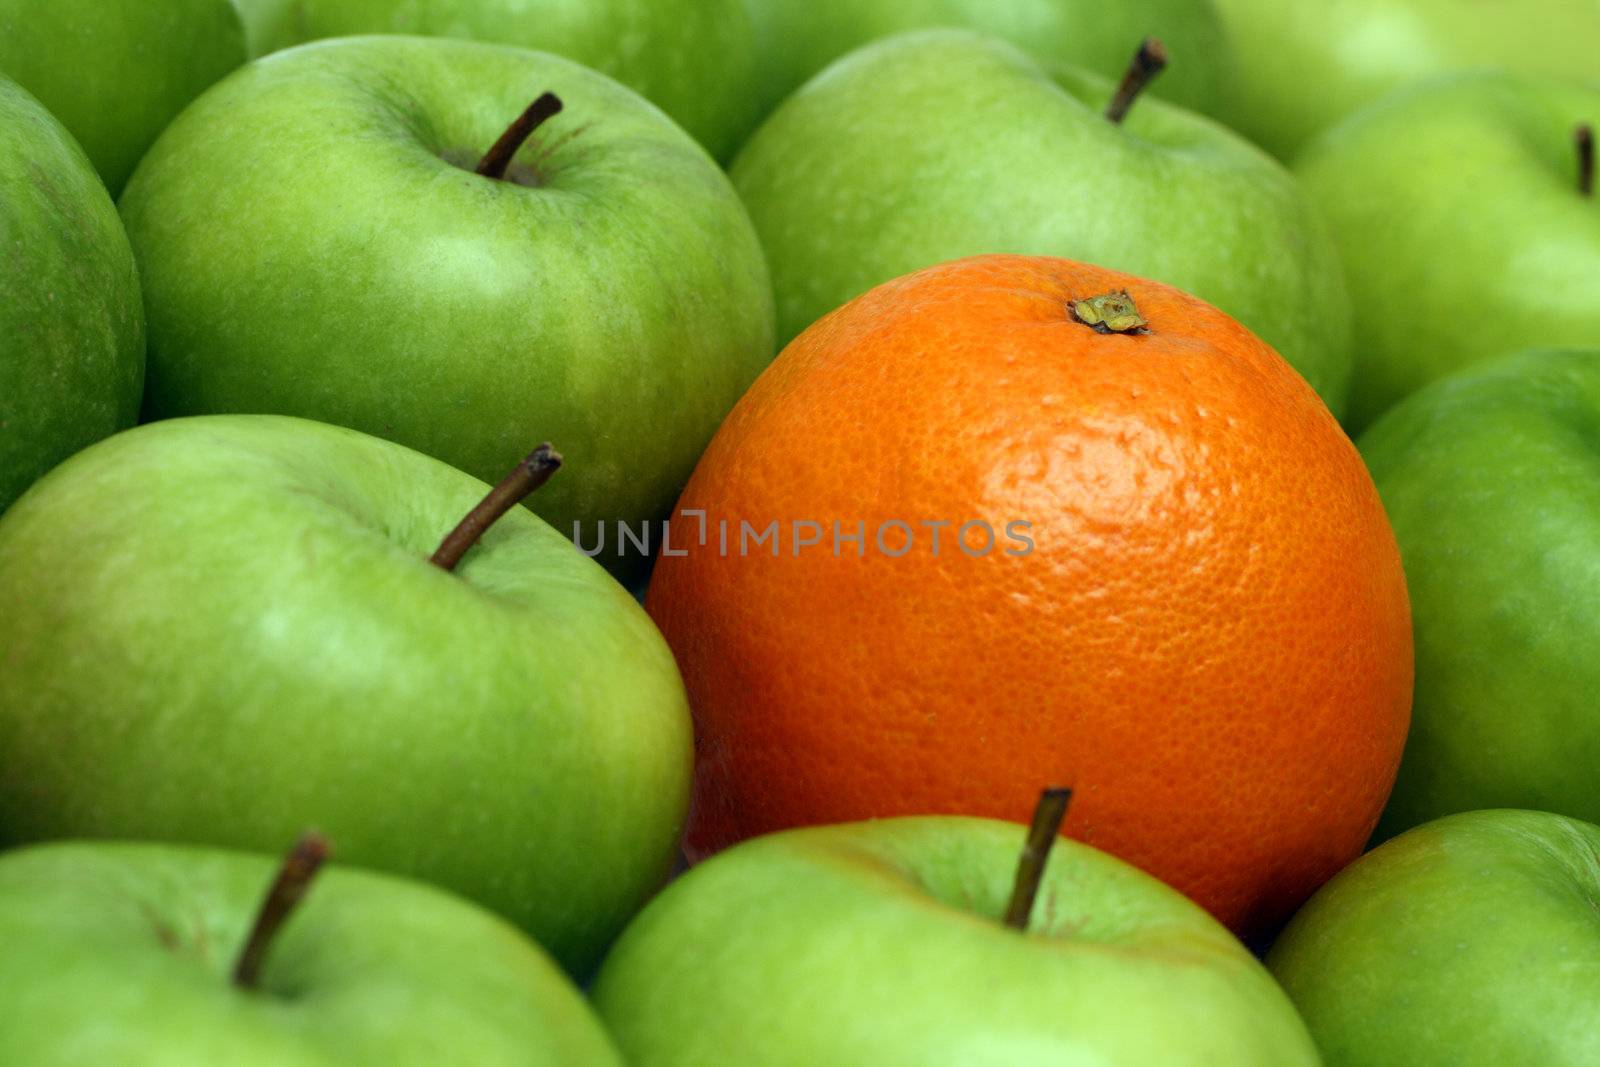 different concepts - orange between apples by Mikko